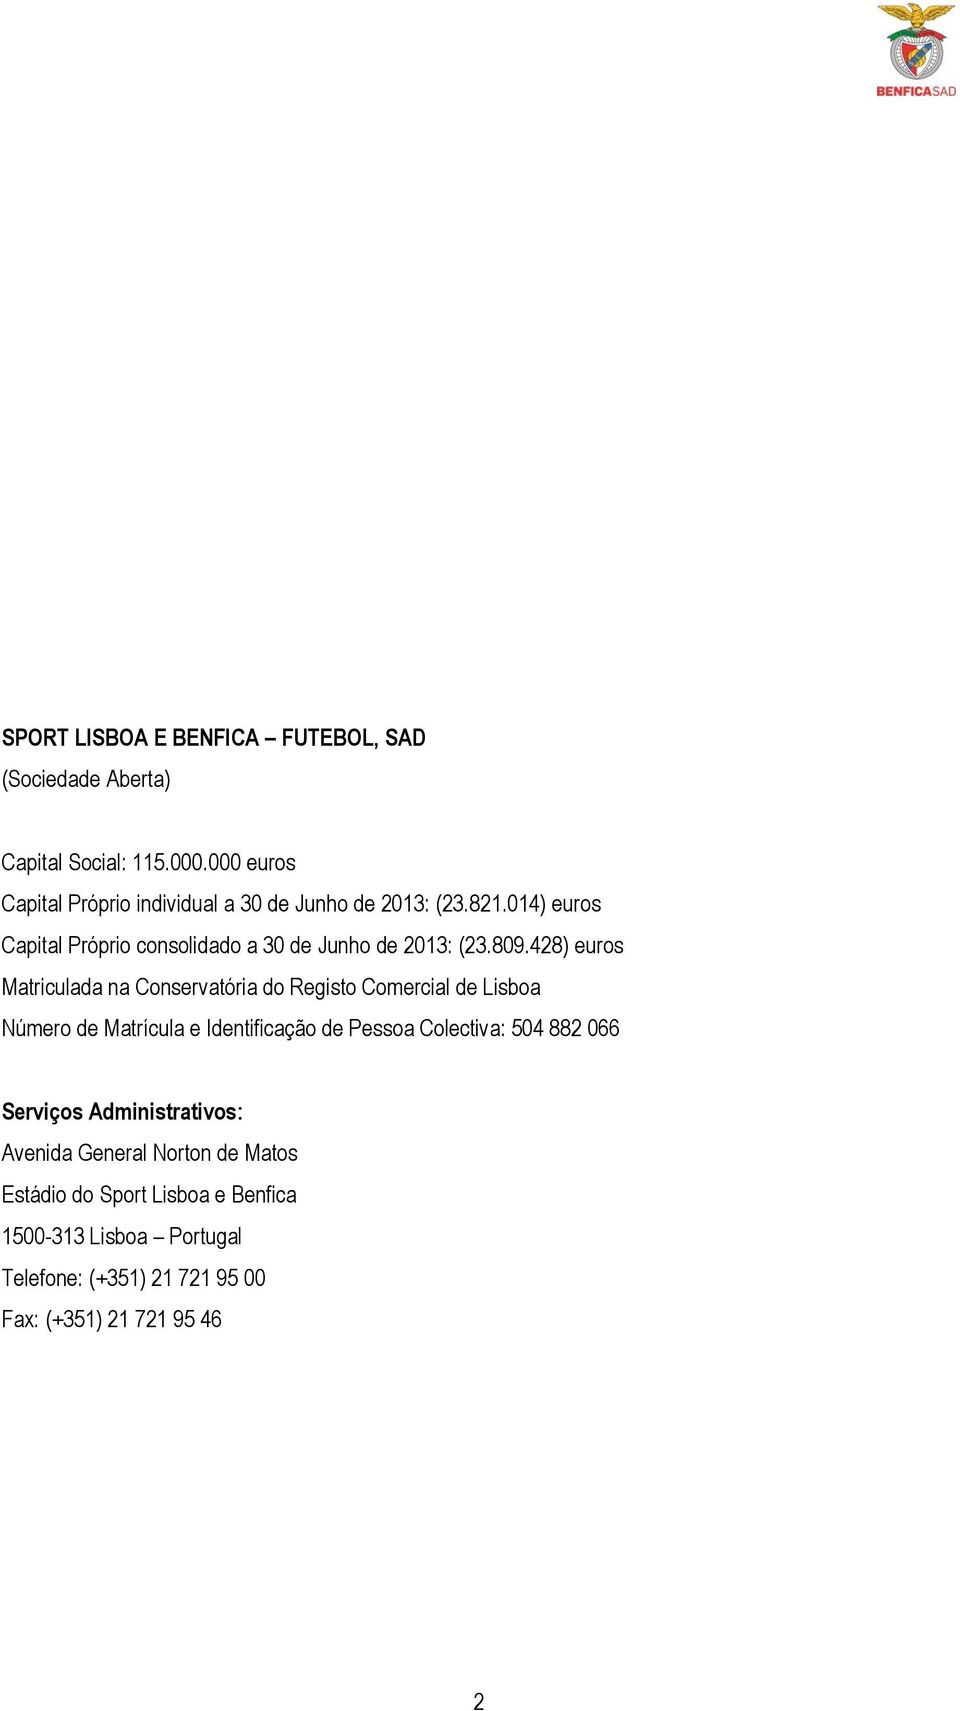 014) euros Capital Próprio consolidado a 30 de Junho de 2013: (23.809.